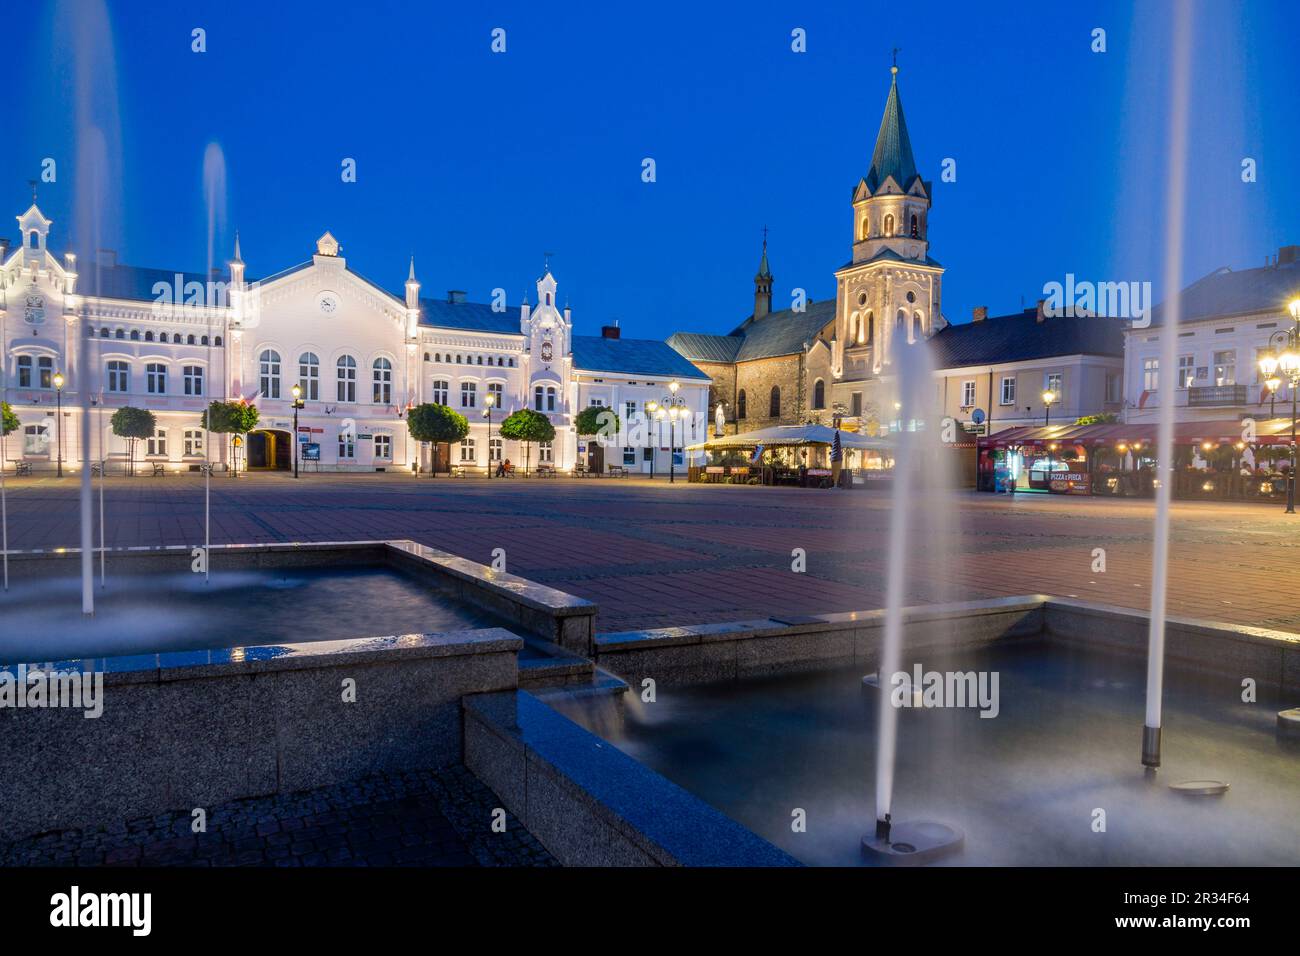 iglesia franciscana y antiguo ayuntamiento, plaza del mercado, Sanok, Voivodato de Subcarpacia, Polonia, eastern europe. Stock Photo